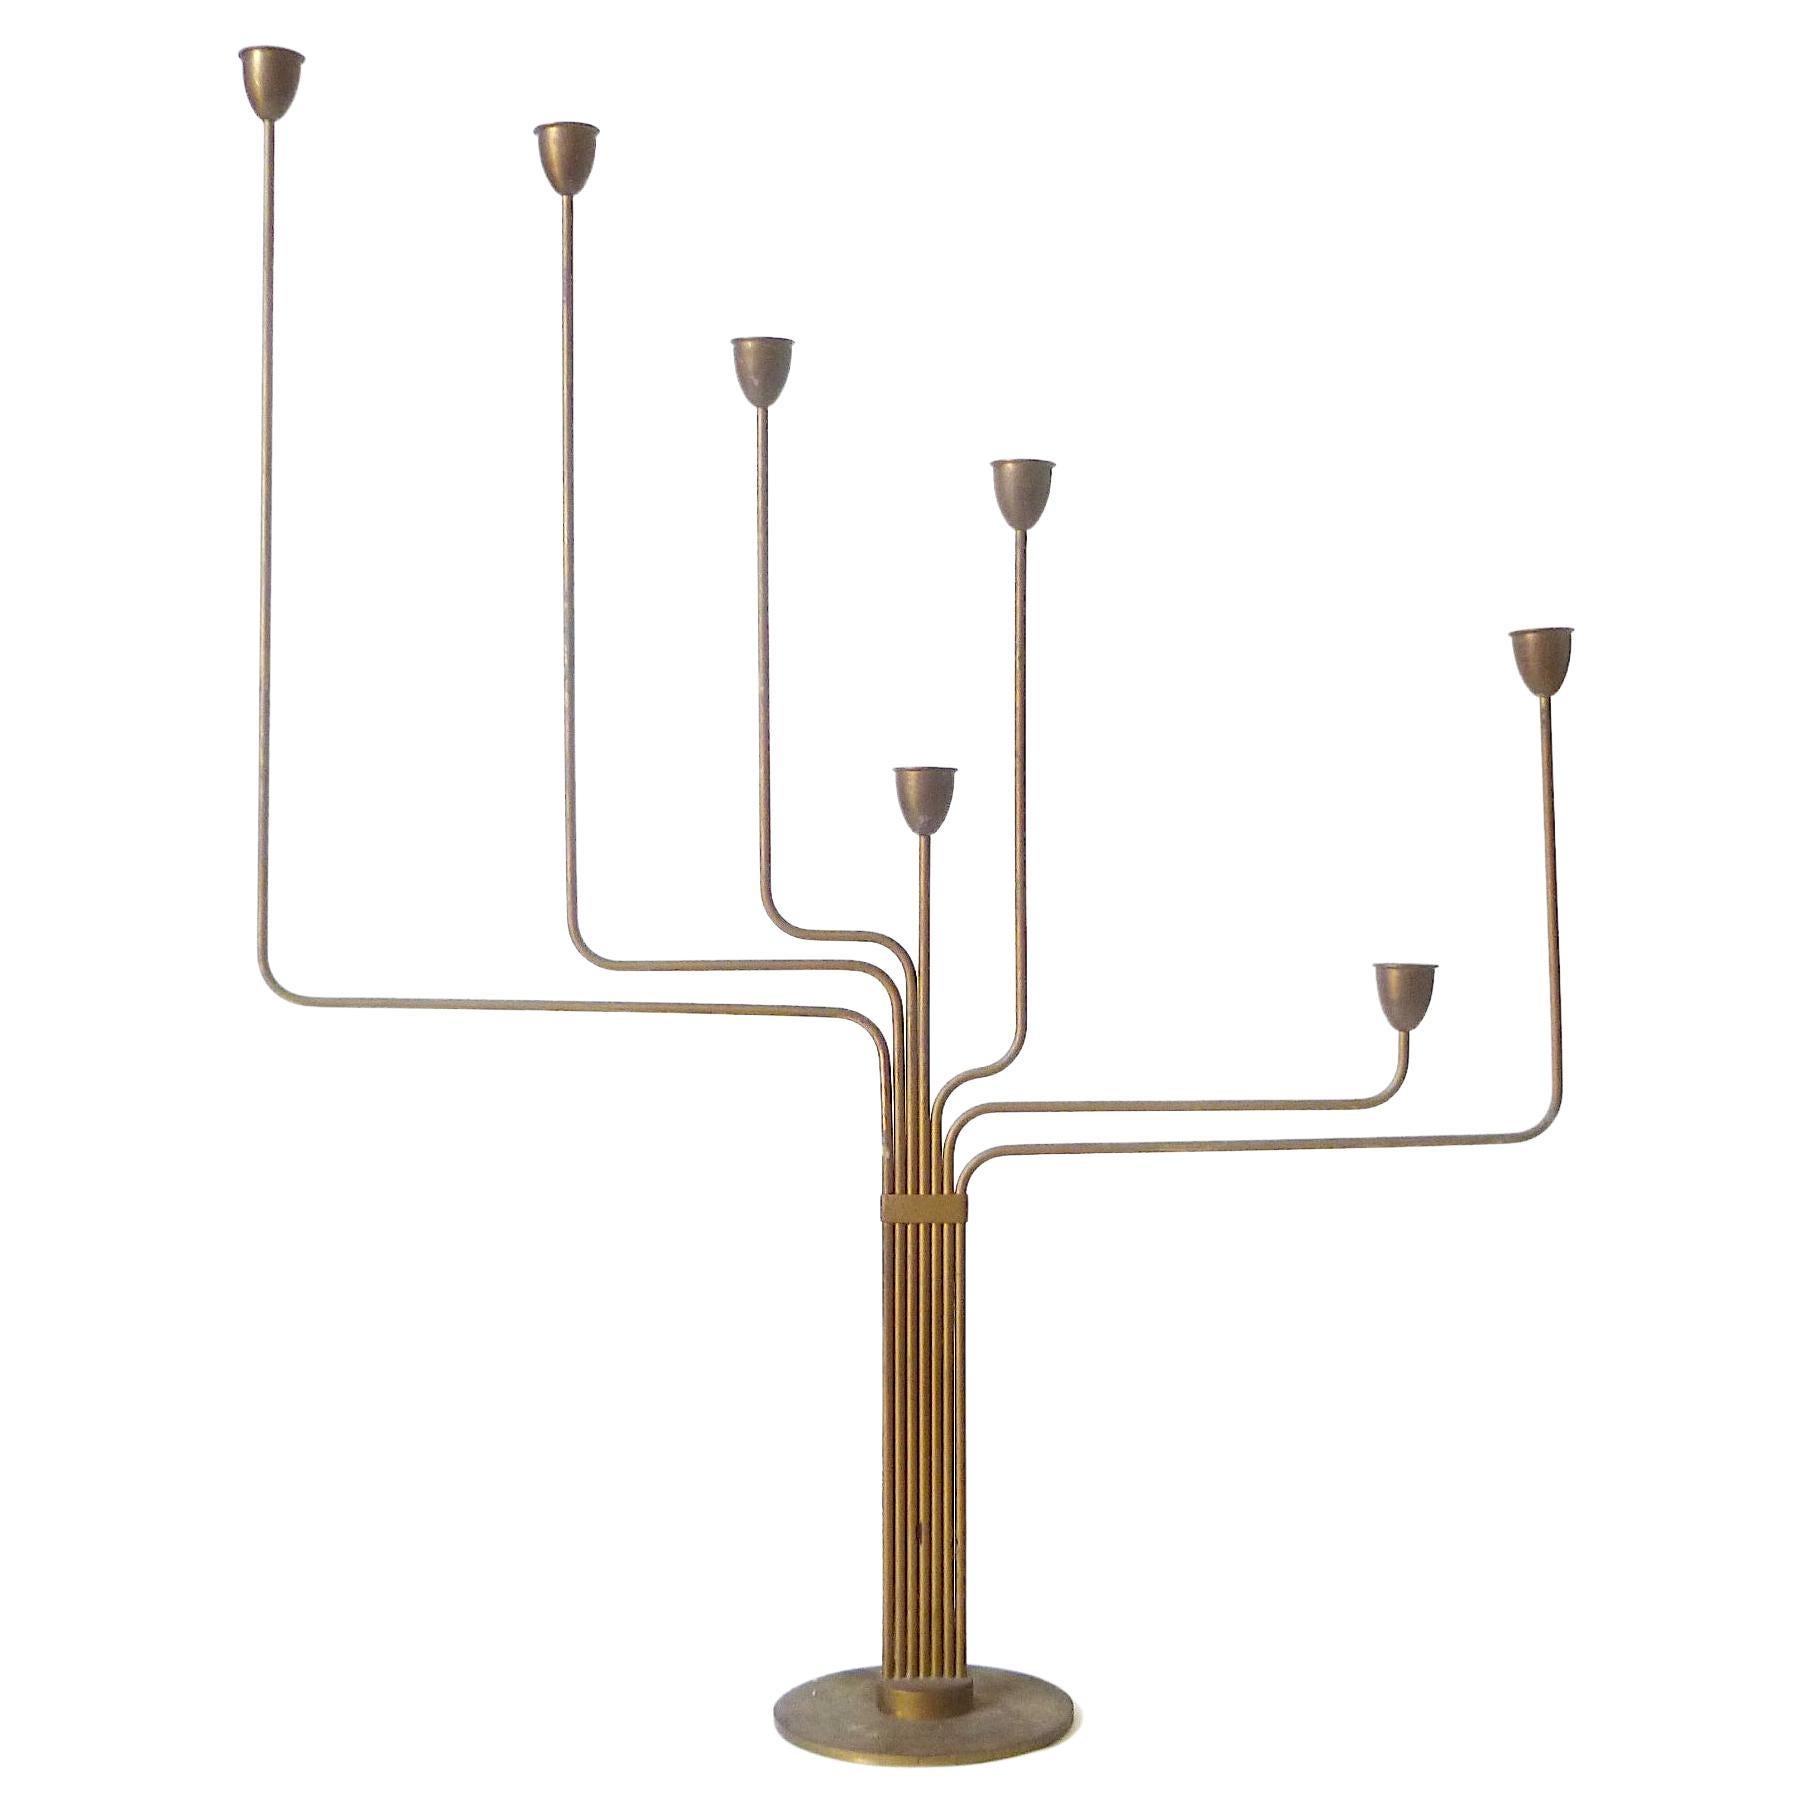 Piet Hein Ursa Major Seven-Arm Candelabrum … Danish Modern Brass Candle Holder For Sale